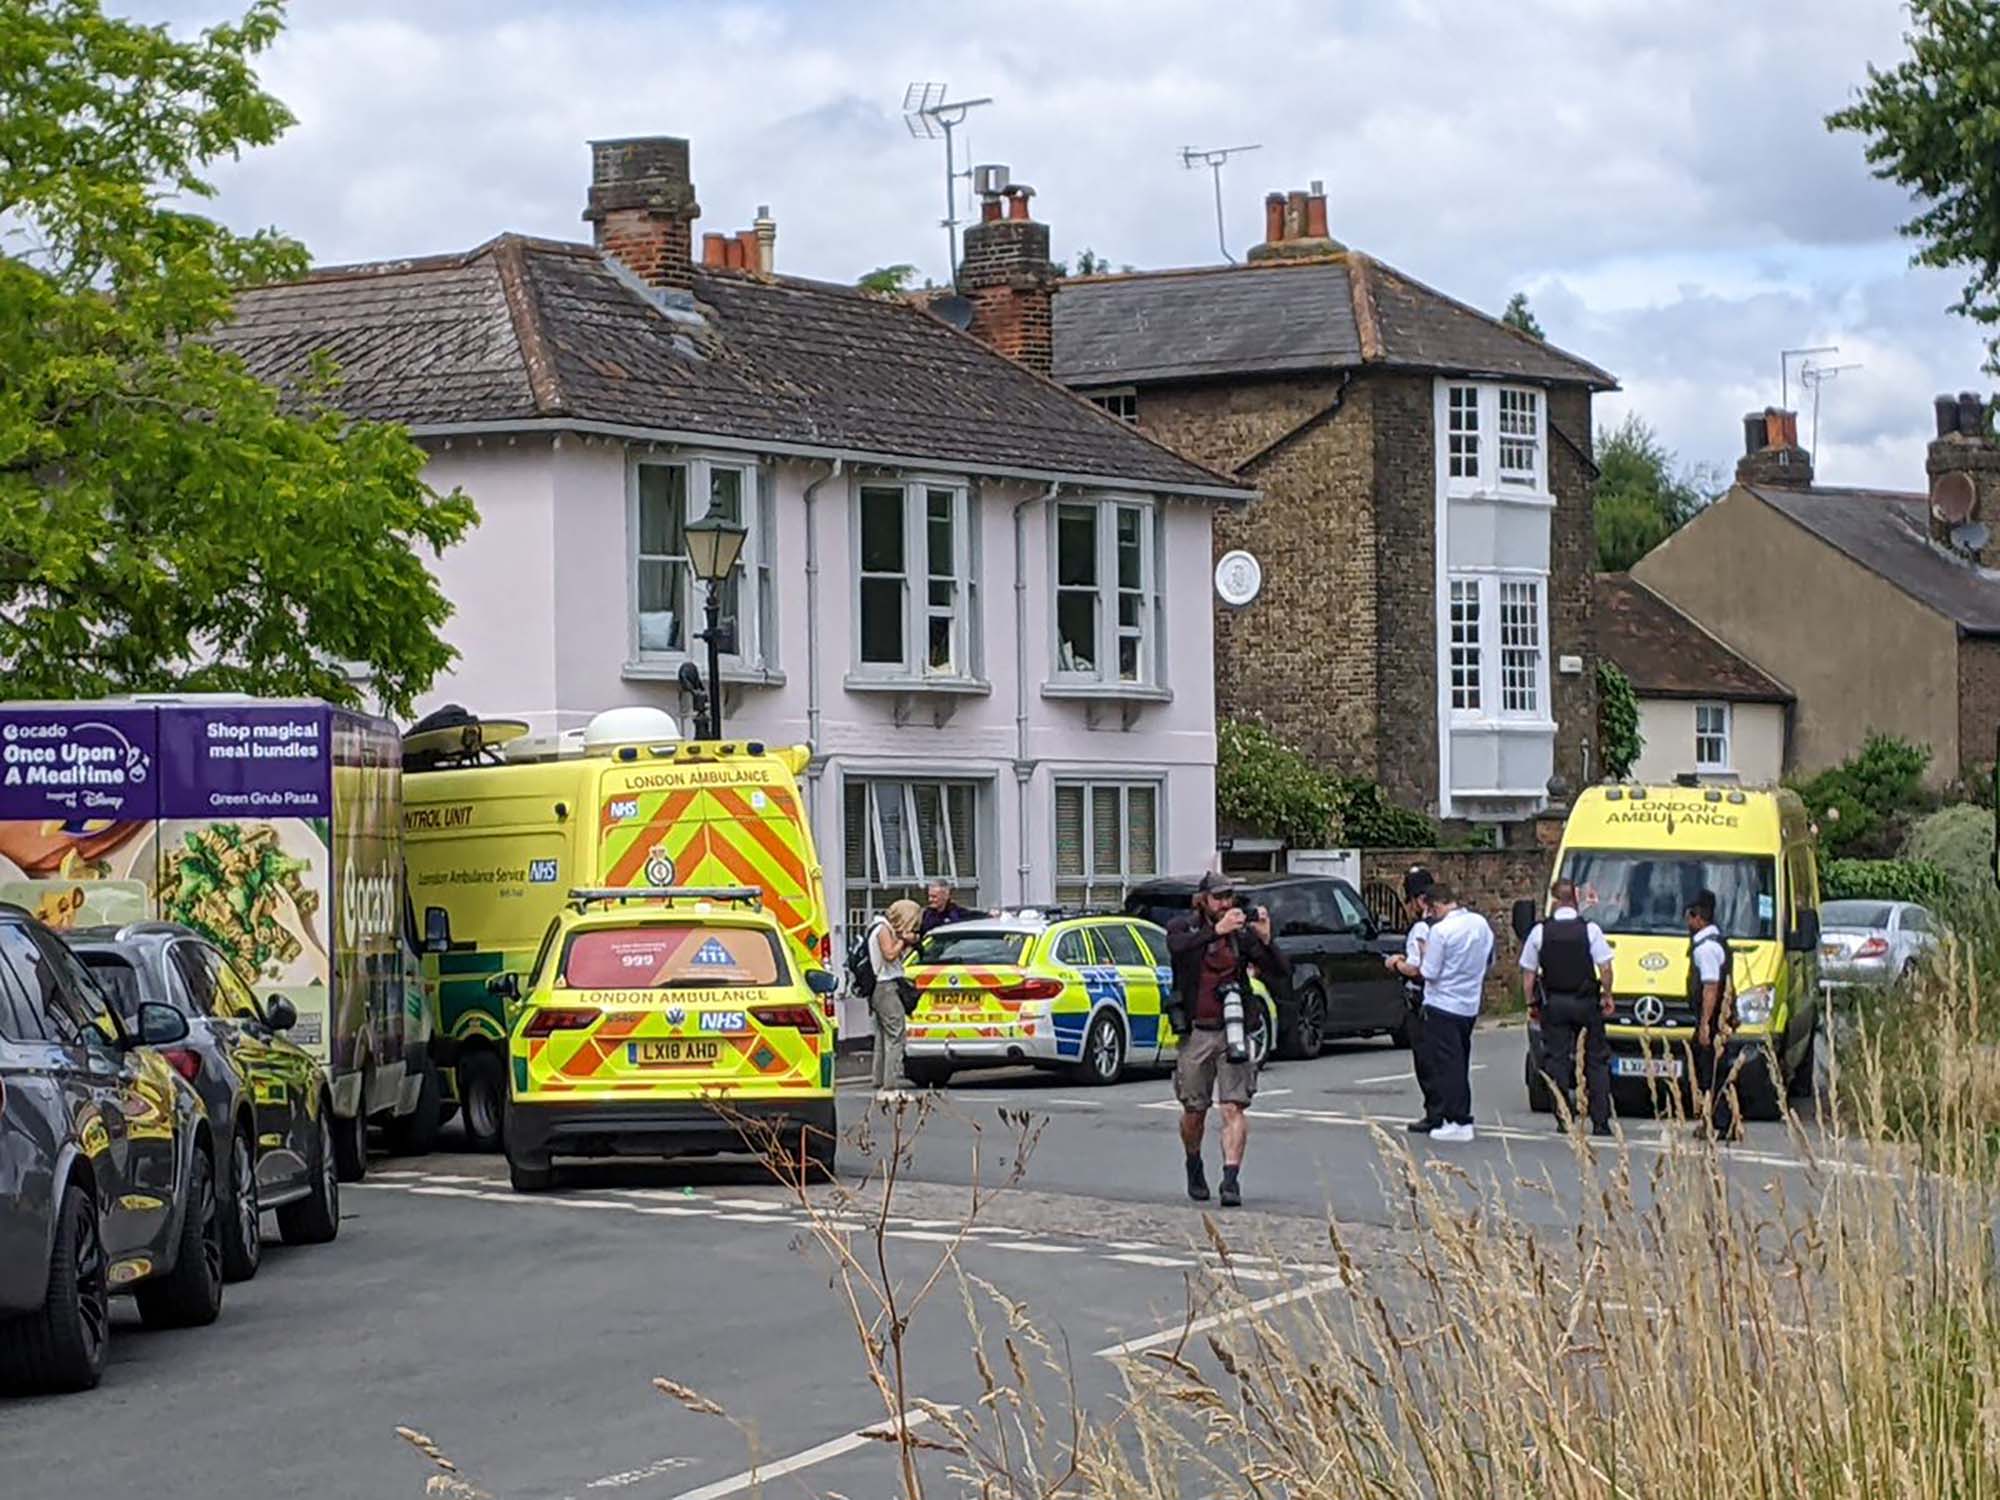 Un cotxe s’estampa contra una escola a Wimbledon, a Londres, i deixa diversos ferits